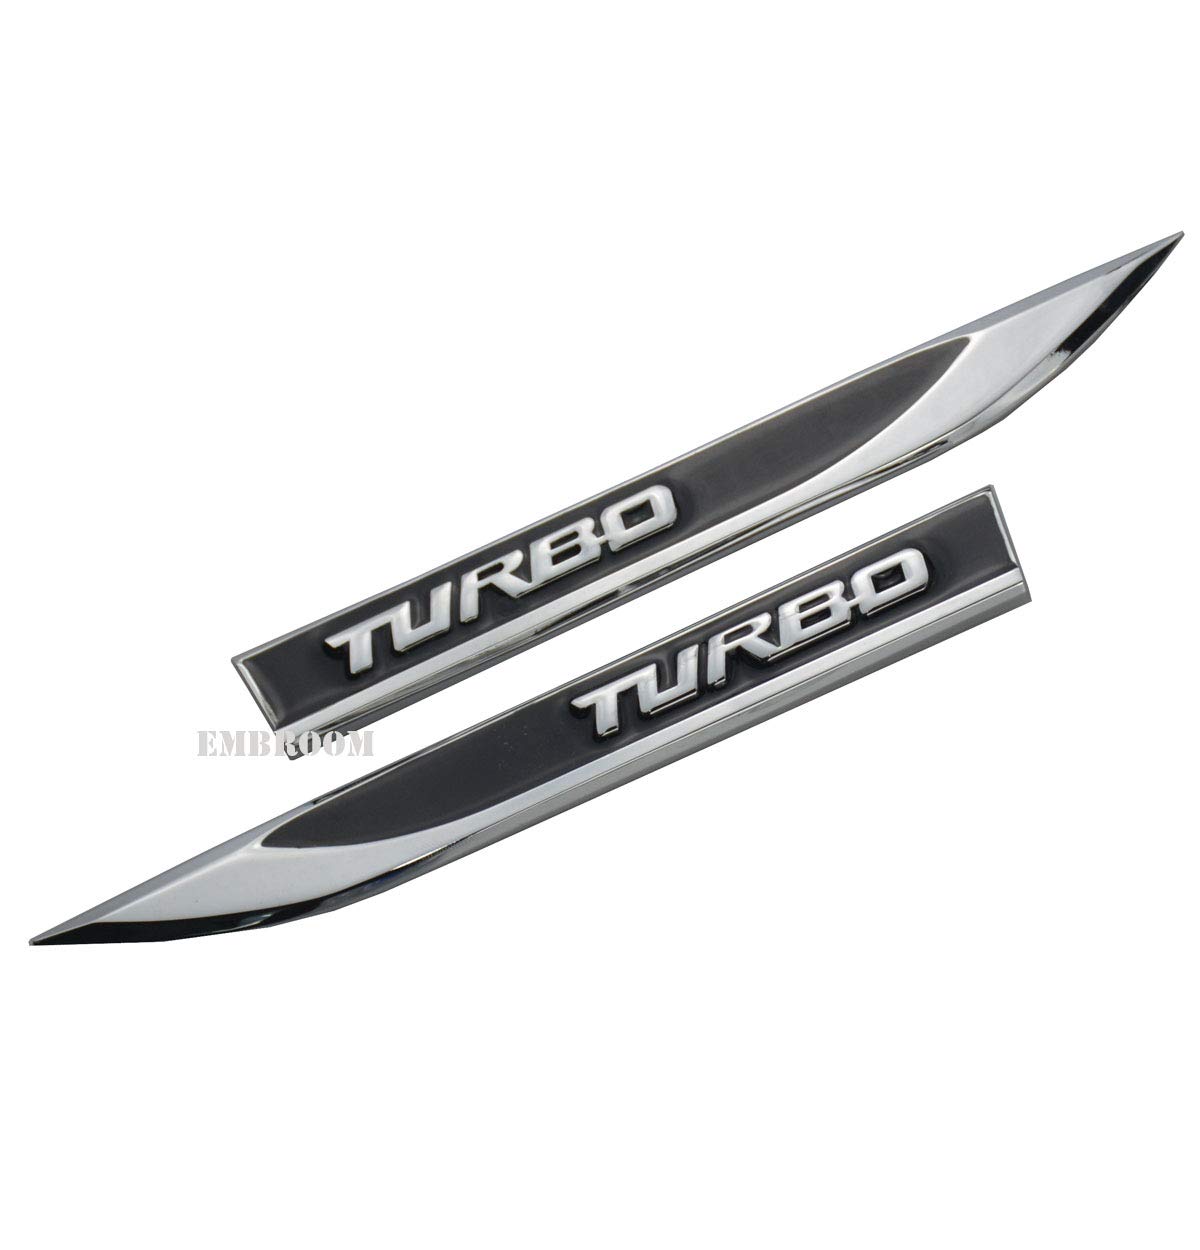 2 x Turbo Auto-Embleme, 3D Metall Auto Seite Kotflügel Heckklappe Kofferraum Emblem Abzeichen Aufkleber Ersatz für Universal Auto von EmbRoom